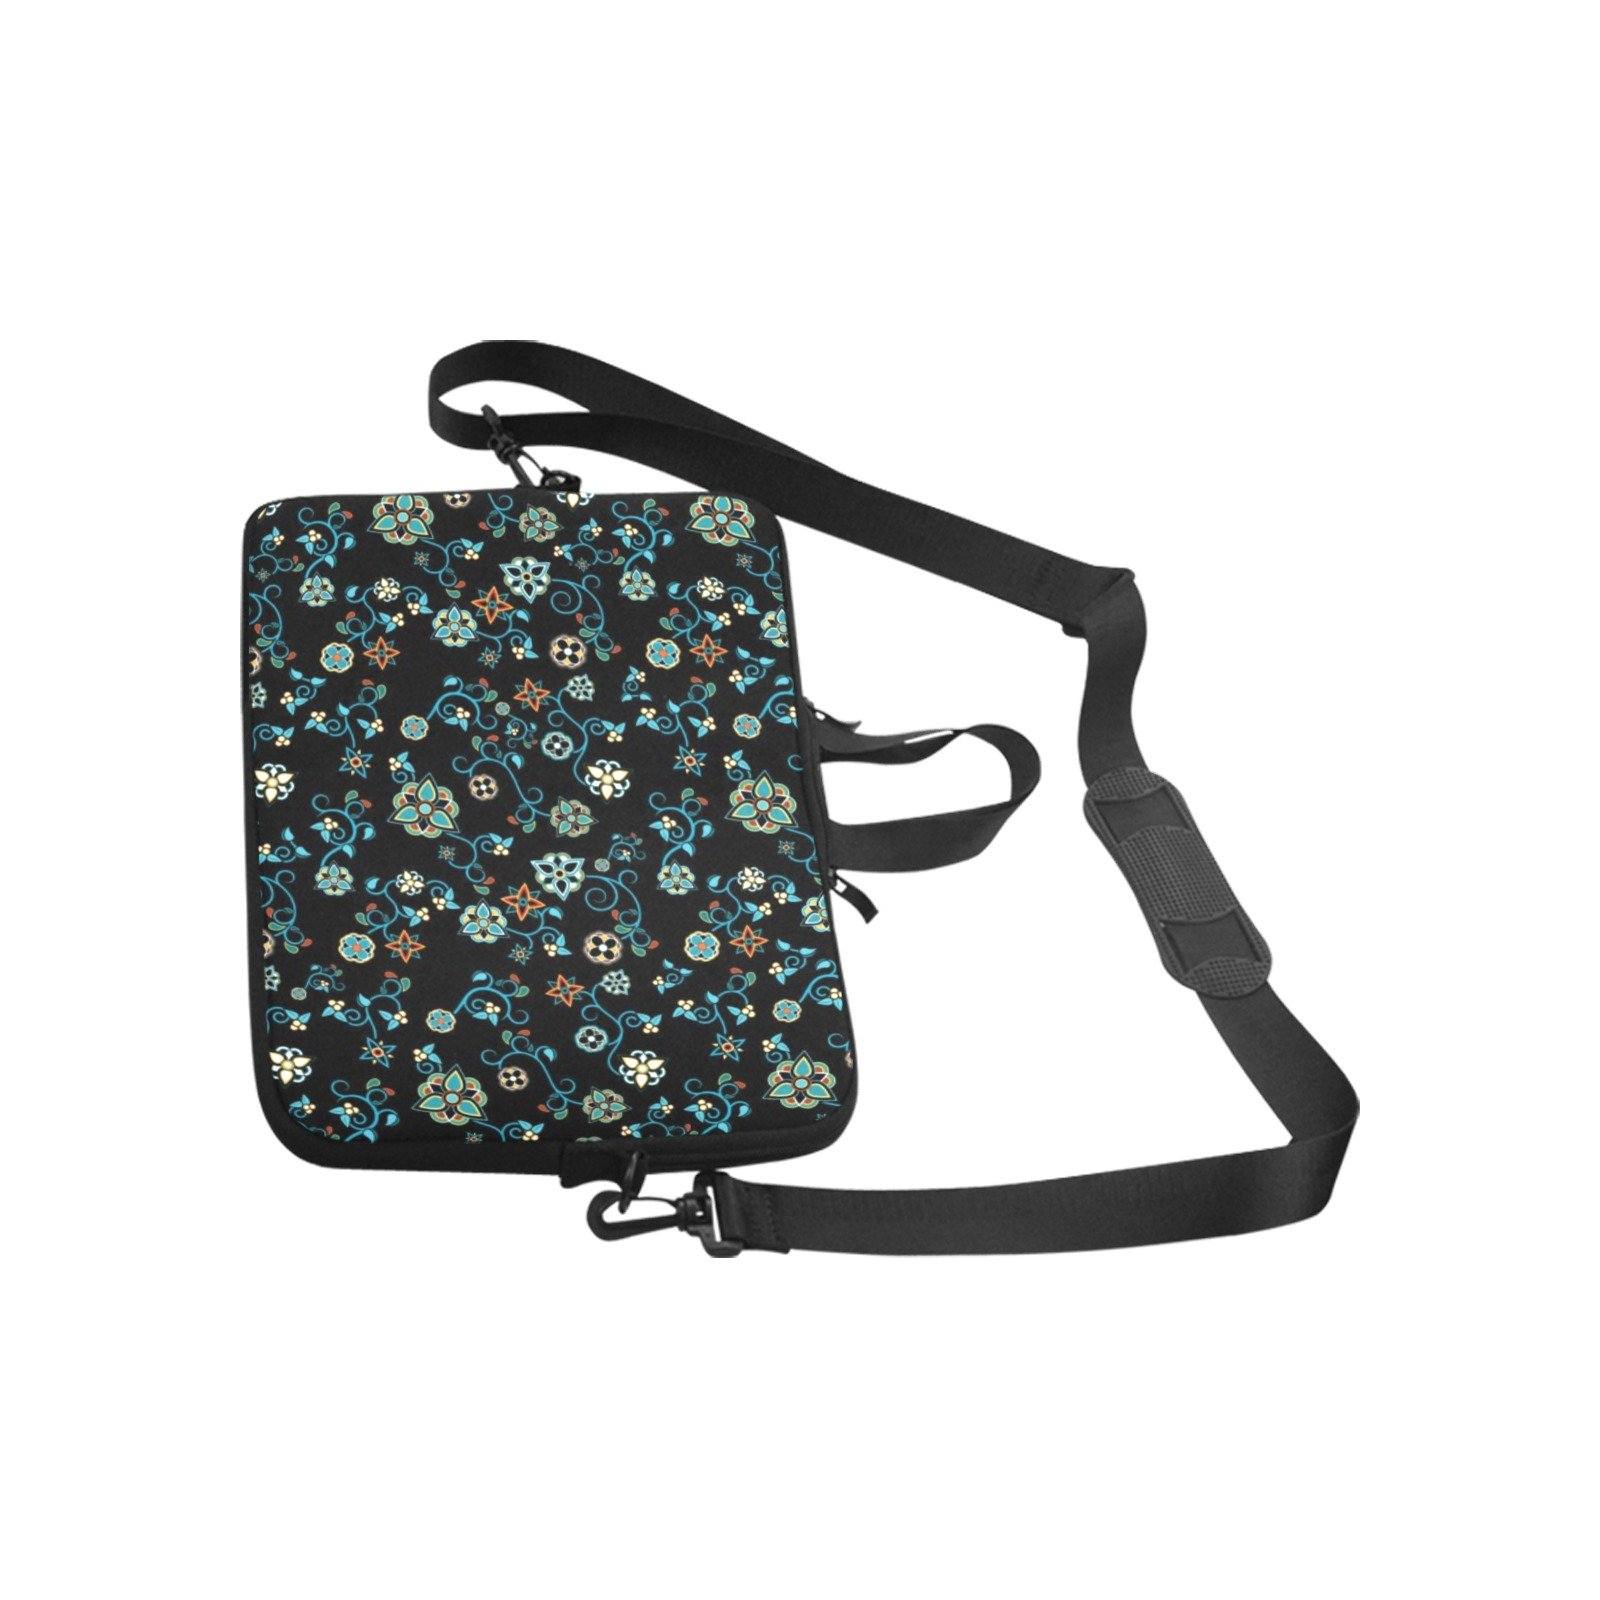 Ocean Bloom Laptop Handbags 11" bag e-joyer 